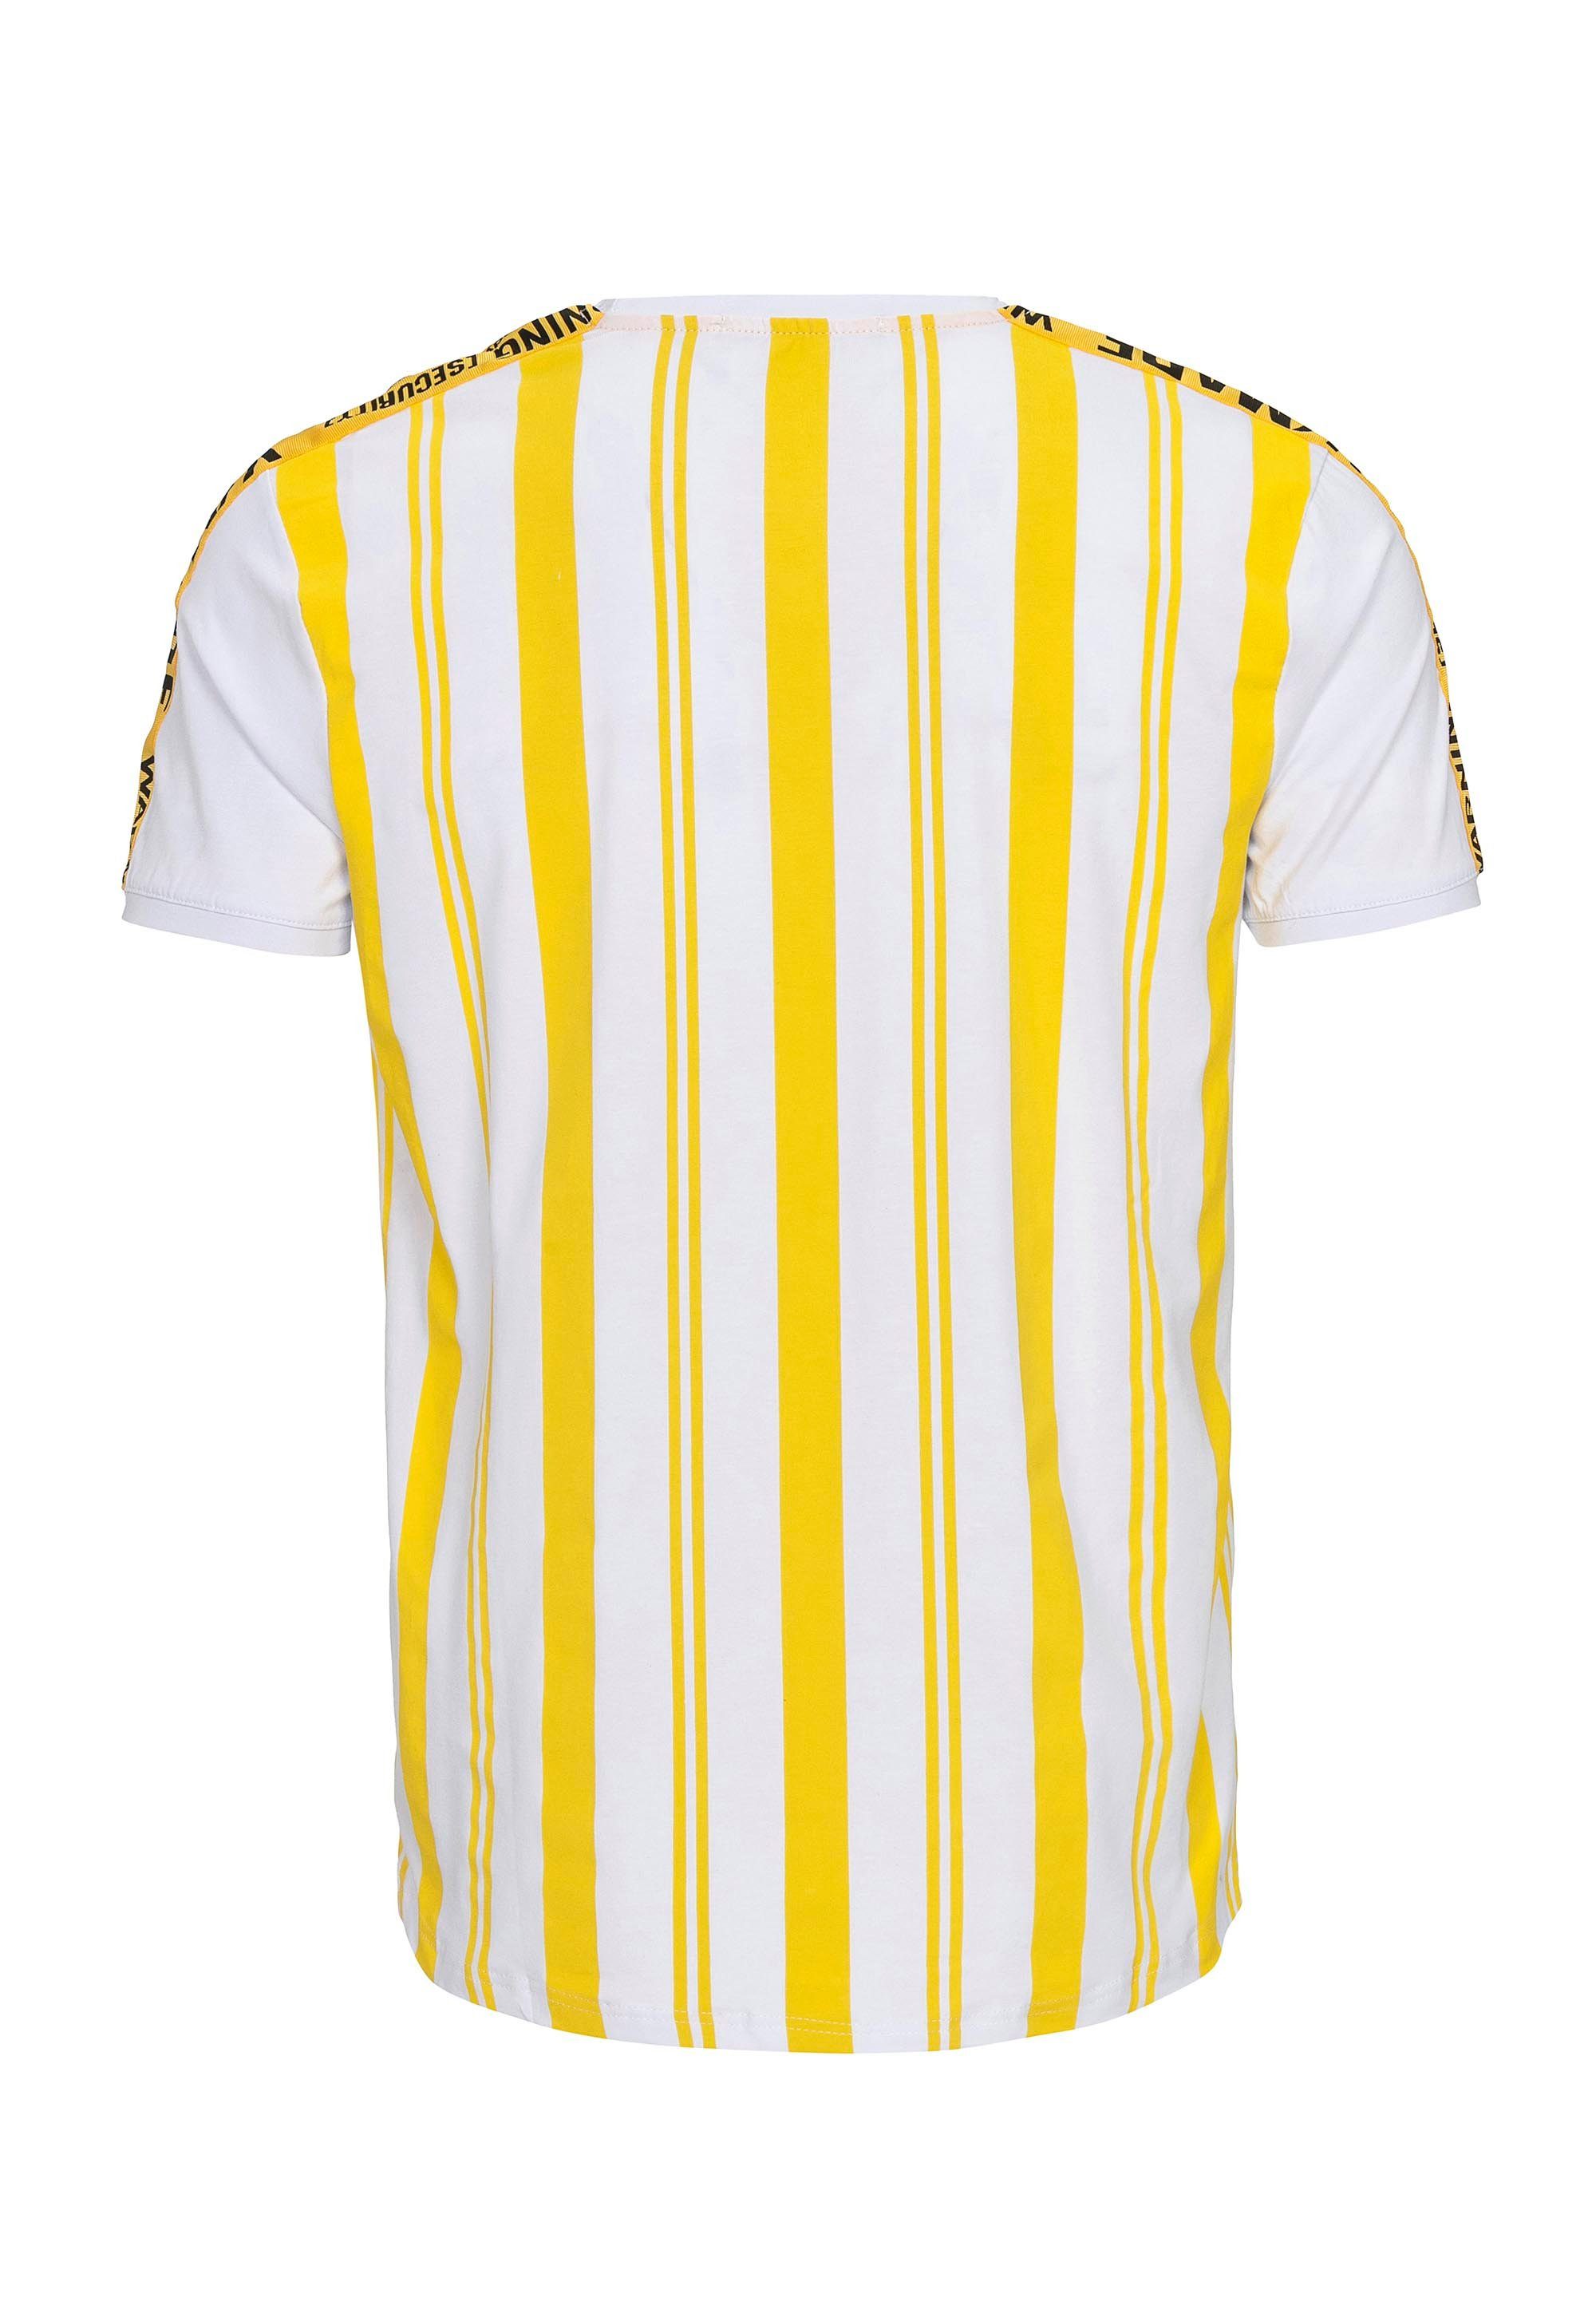 RedBridge gelb-weiß T-Shirt Summer mit Stripes Baltimore